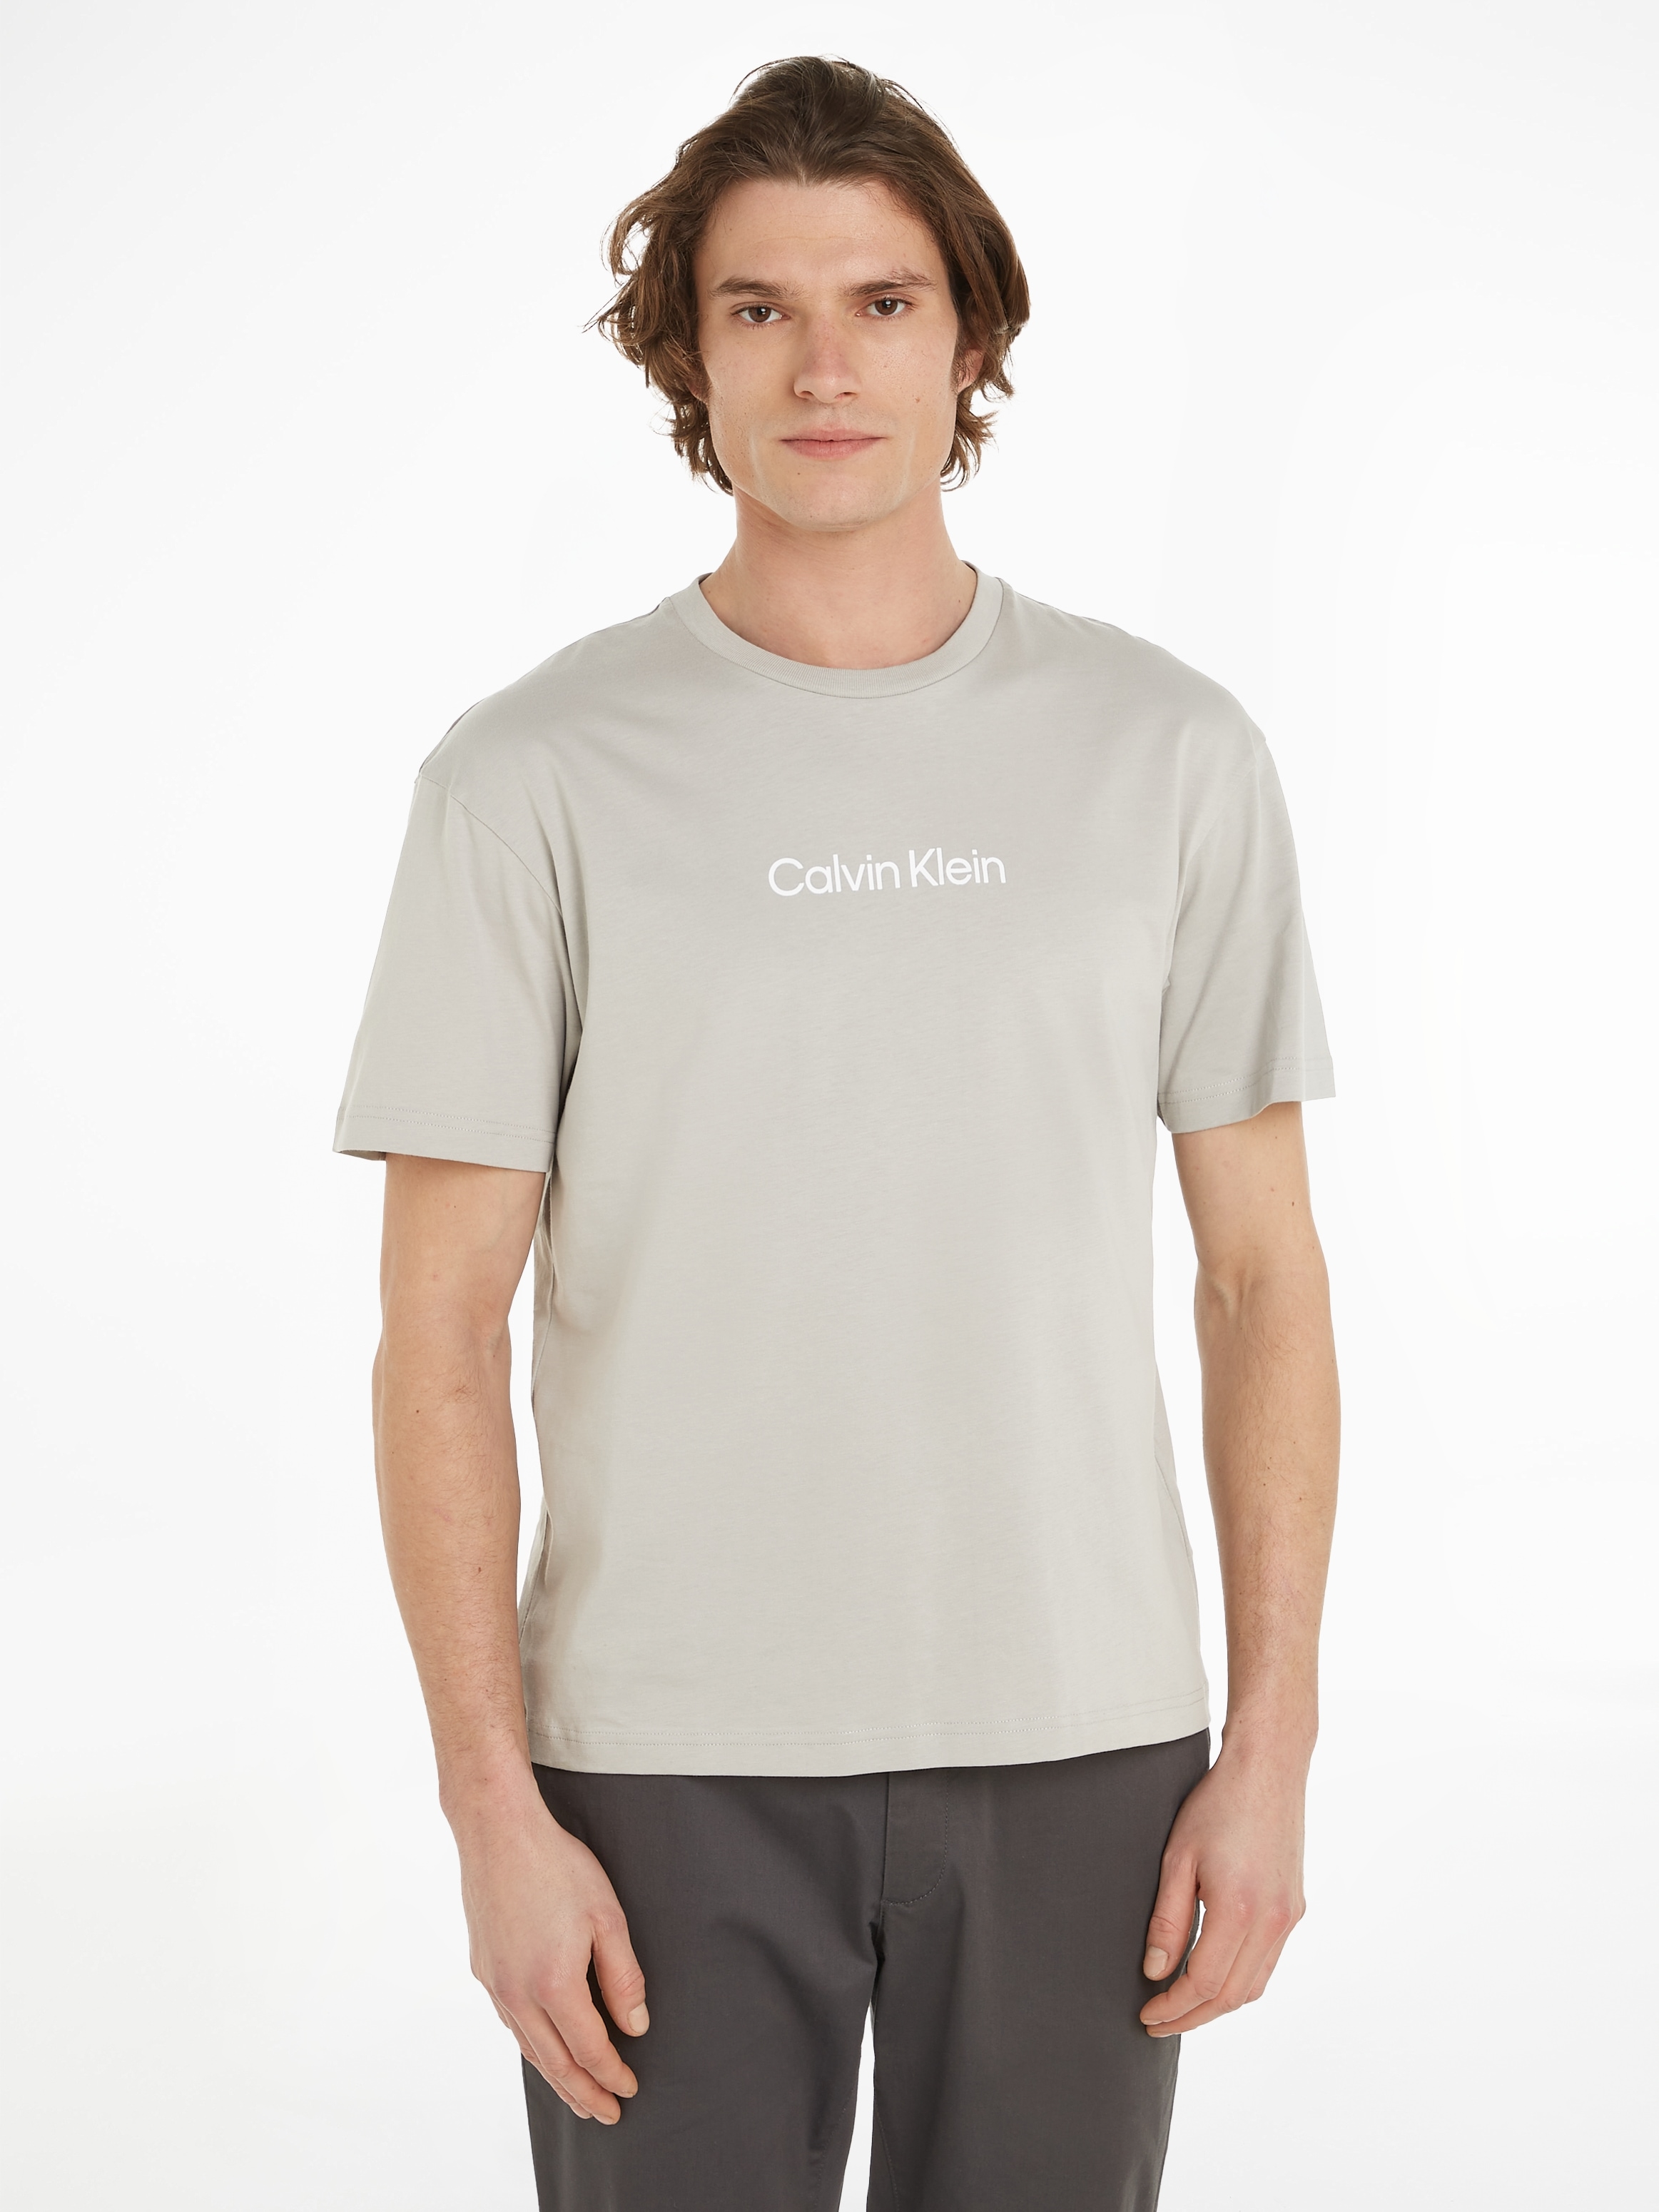 »HERO T-Shirt ♕ Calvin Klein T-SHIRT«, aufgedrucktem COMFORT LOGO Markenlabel bei mit